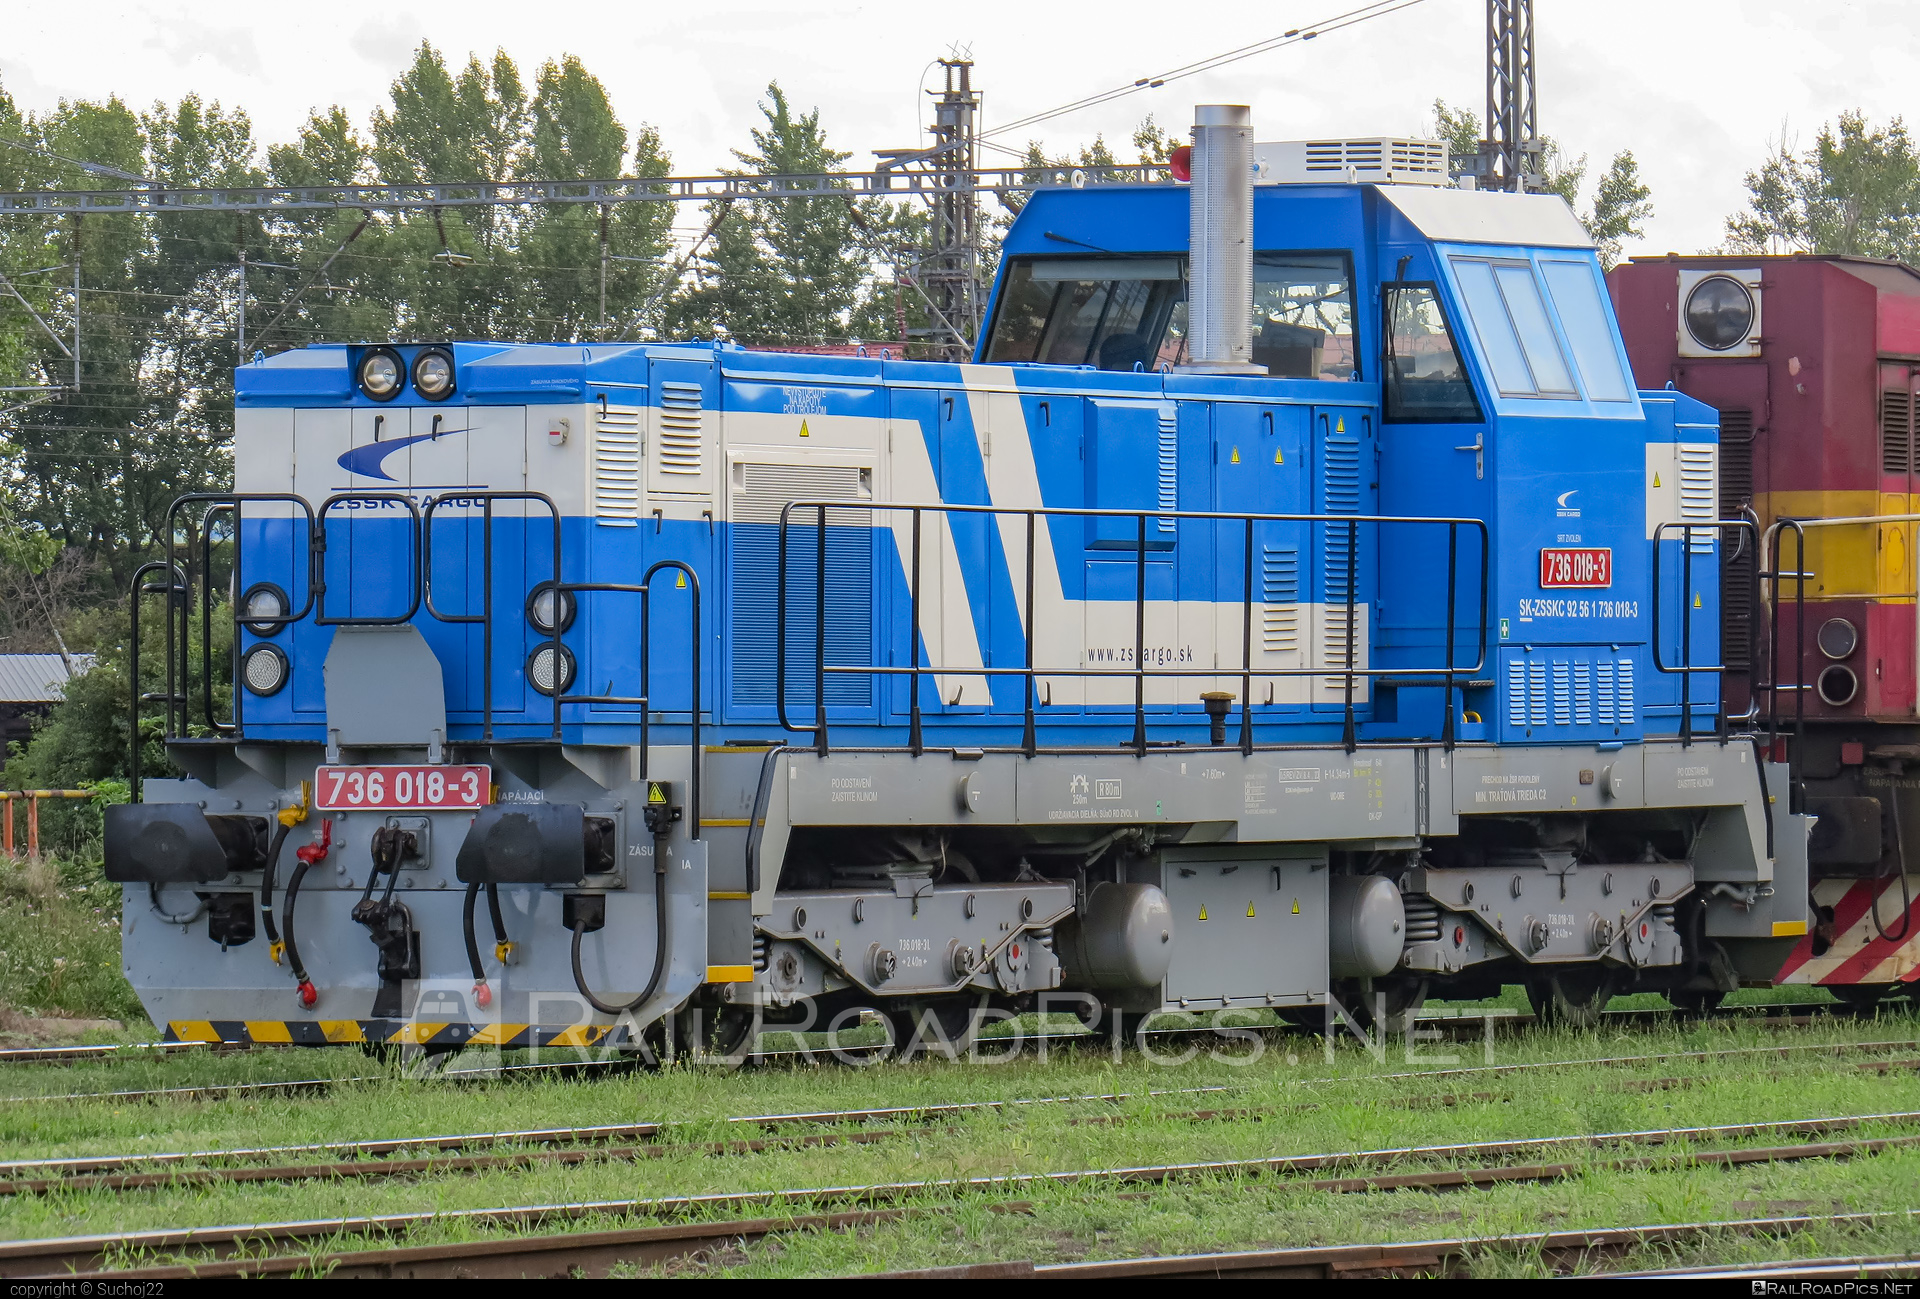 ŽOS Zvolen Class 736 - 736 018-3 operated by Železničná Spoločnost' Cargo Slovakia a.s. #ZeleznicnaSpolocnostCargoSlovakia #locomotive736 #zoszvolen #zoszvolen736 #zsskcargo